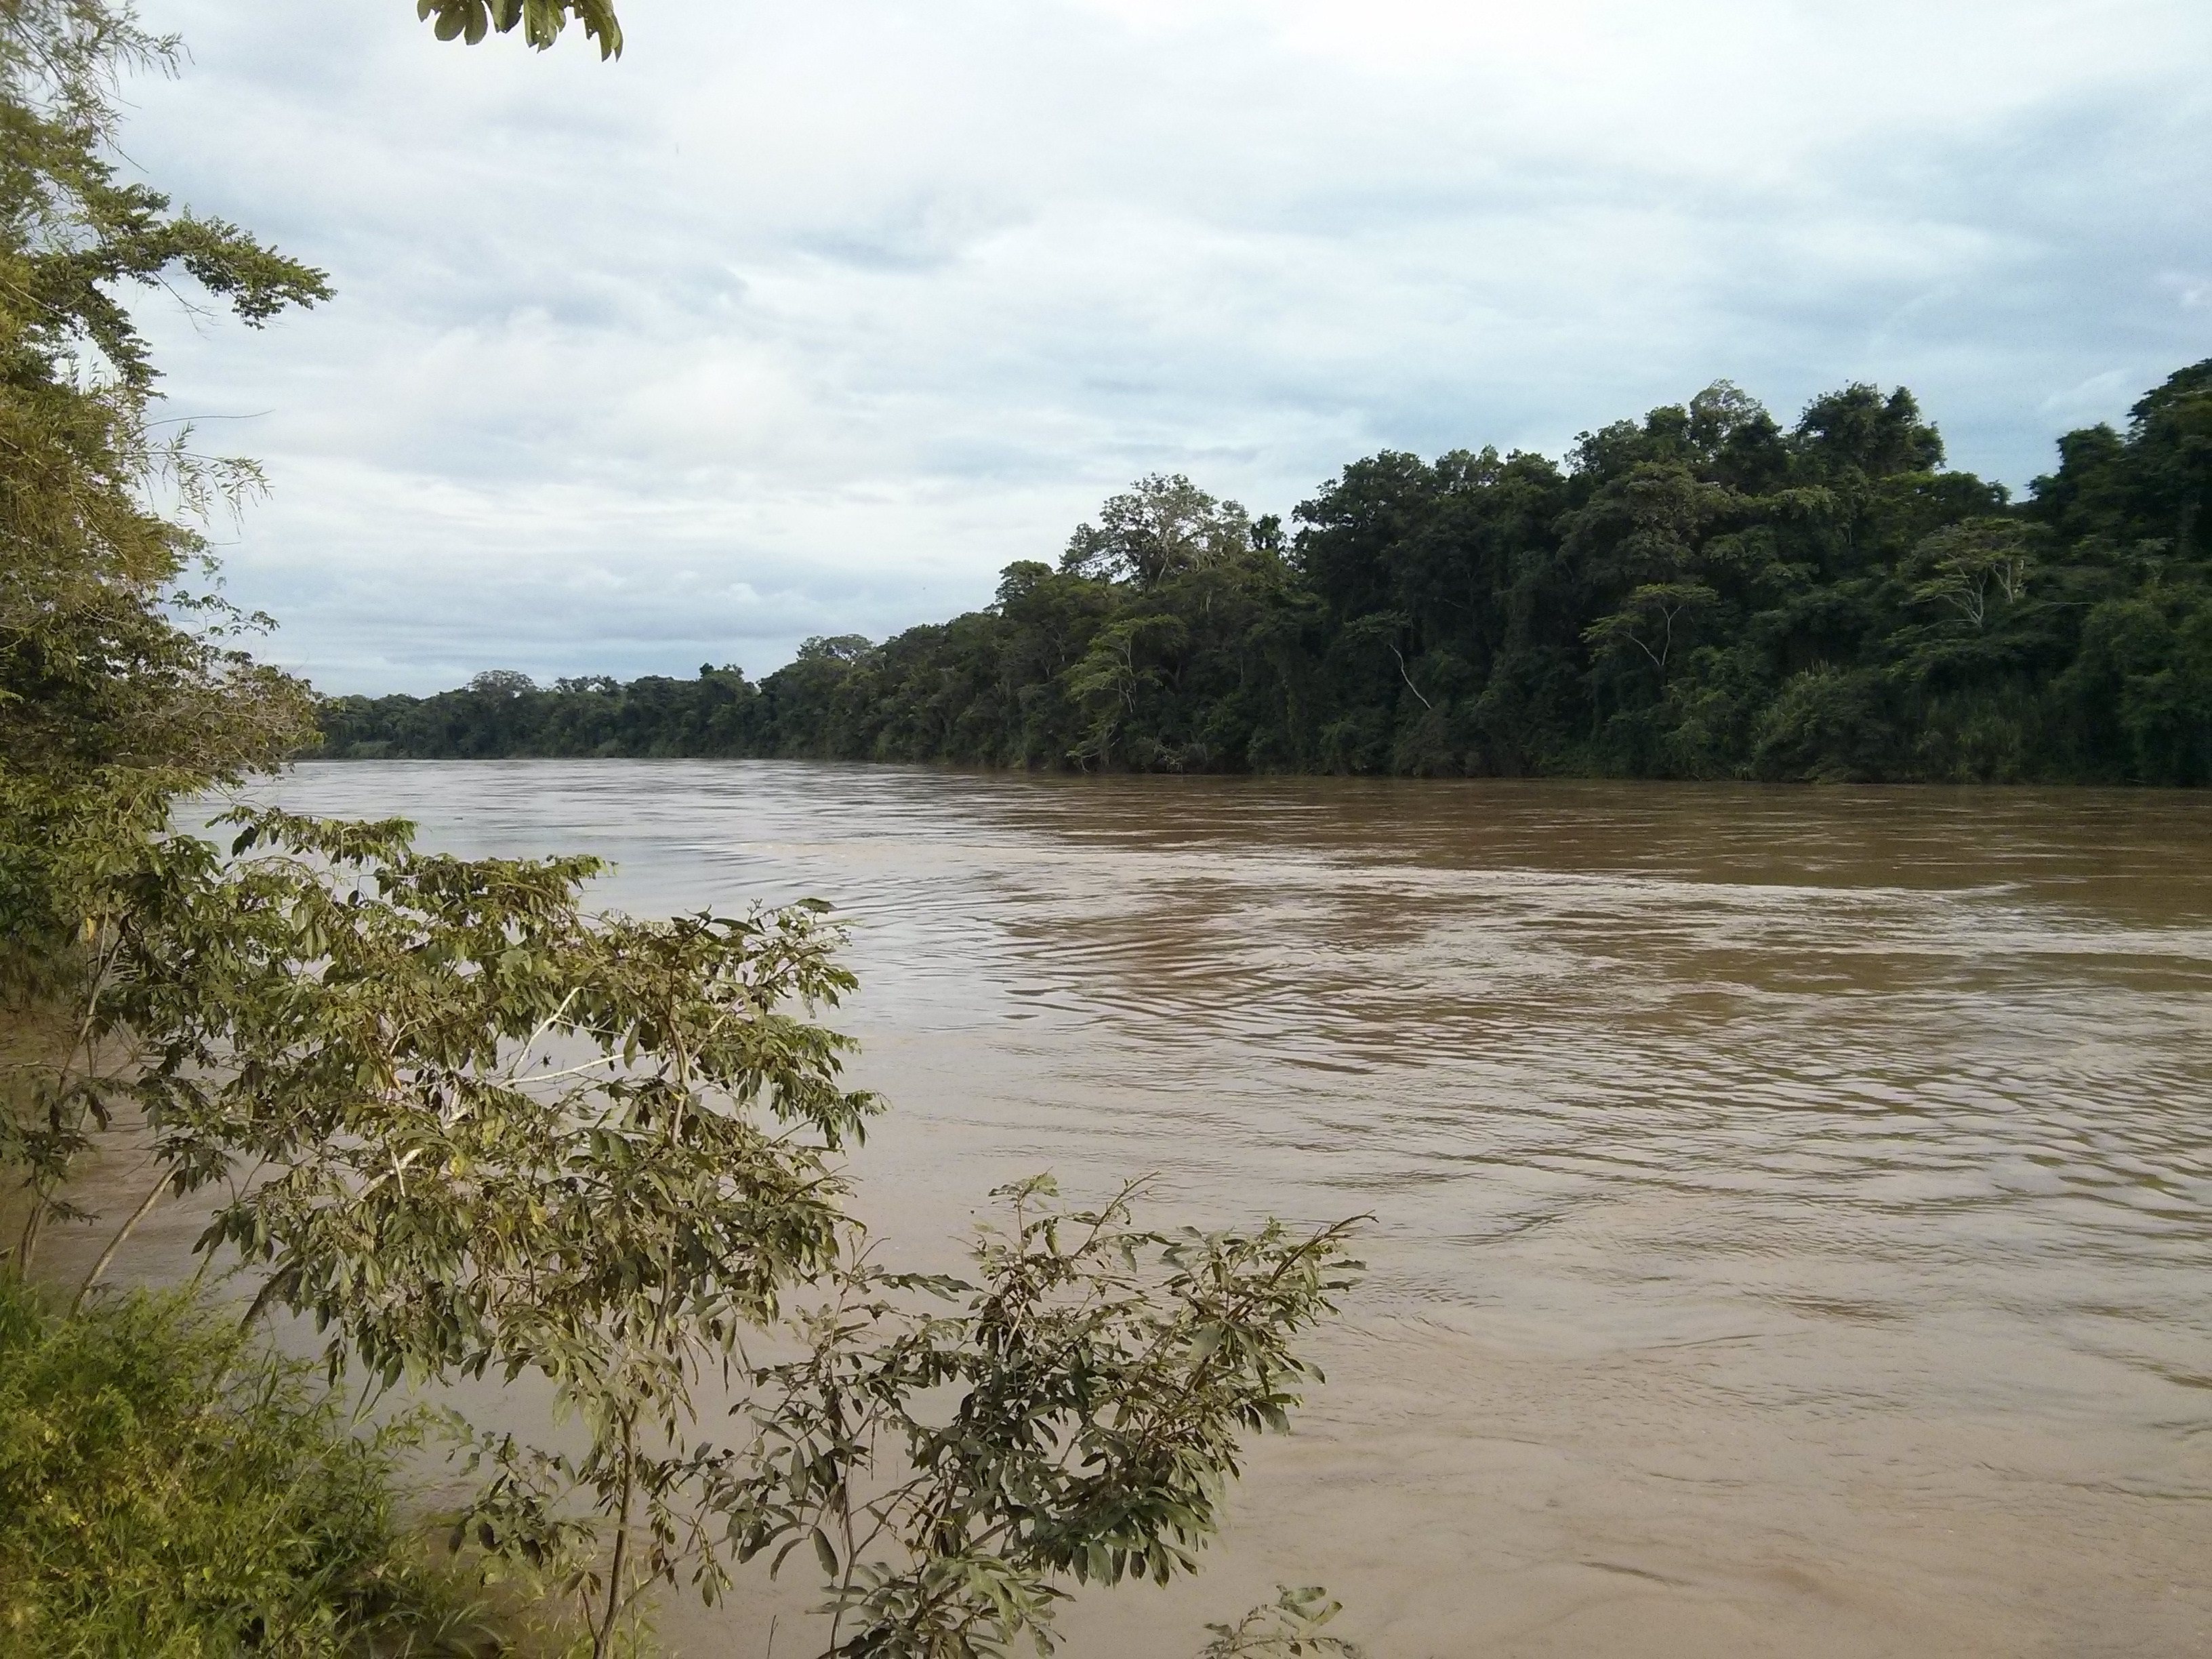 Lacandon Selva: Las Guacamayas looking west on the Rio Lacantun.